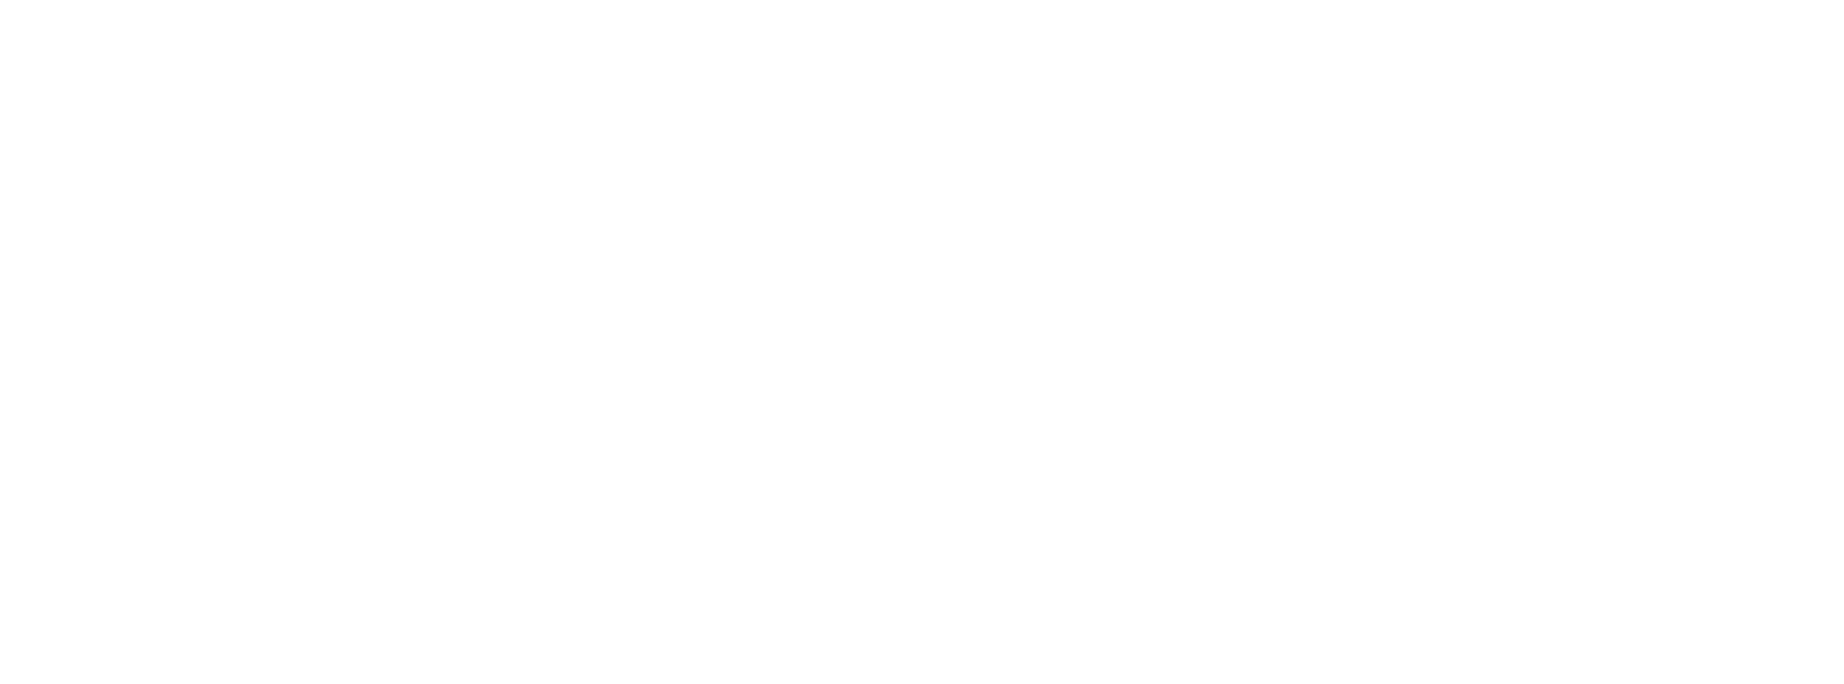 COZI TV